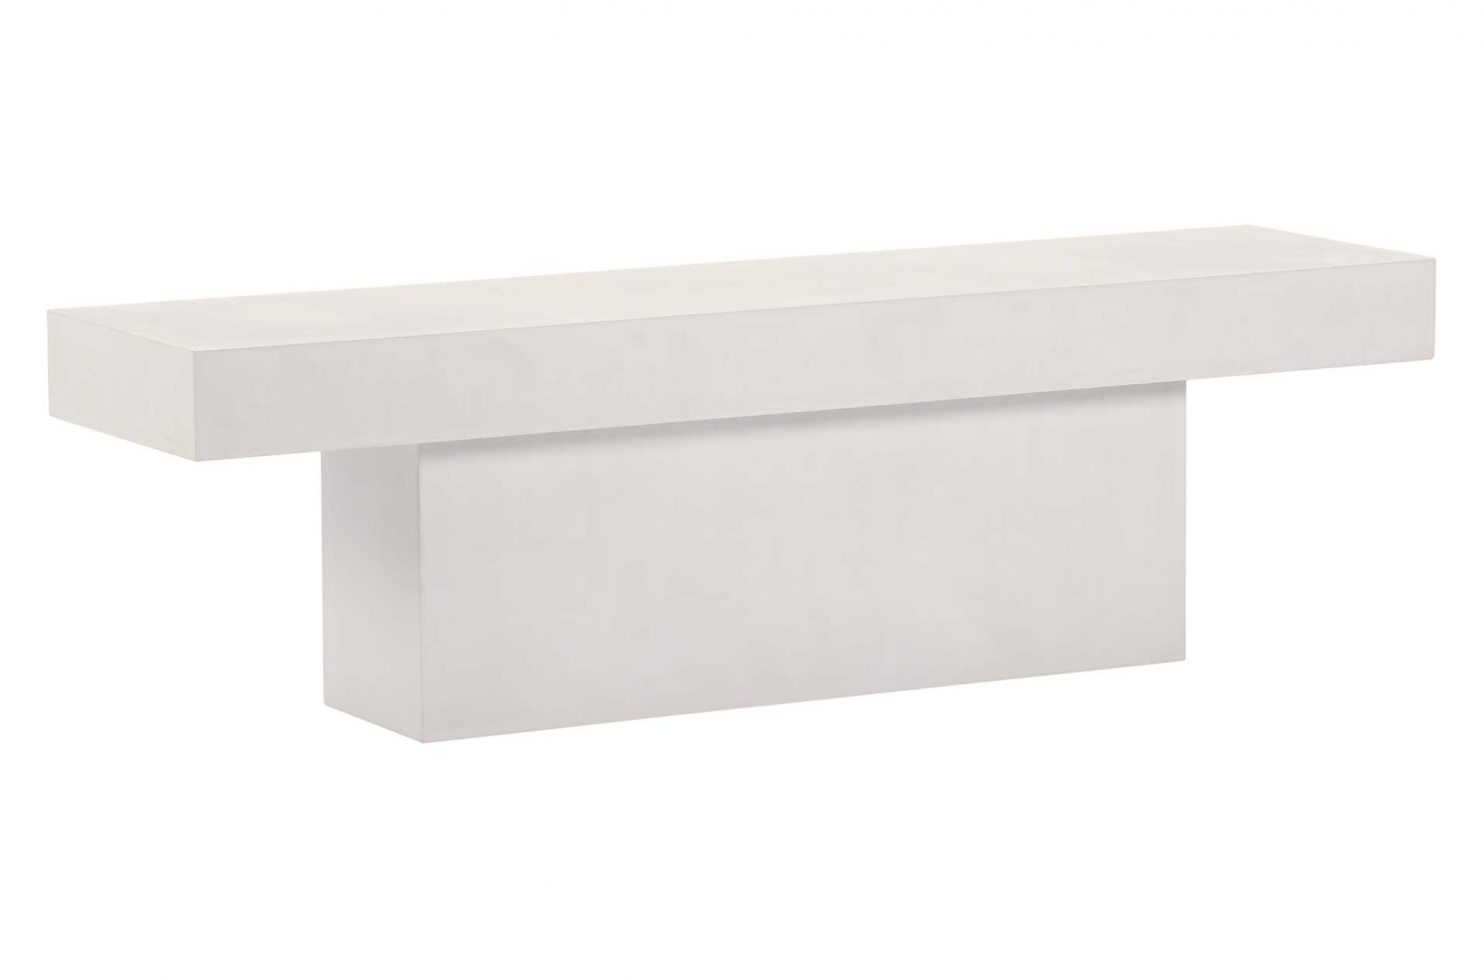 Seasonal Living Perpetual Concrete T-Bench â€“ Ivory White